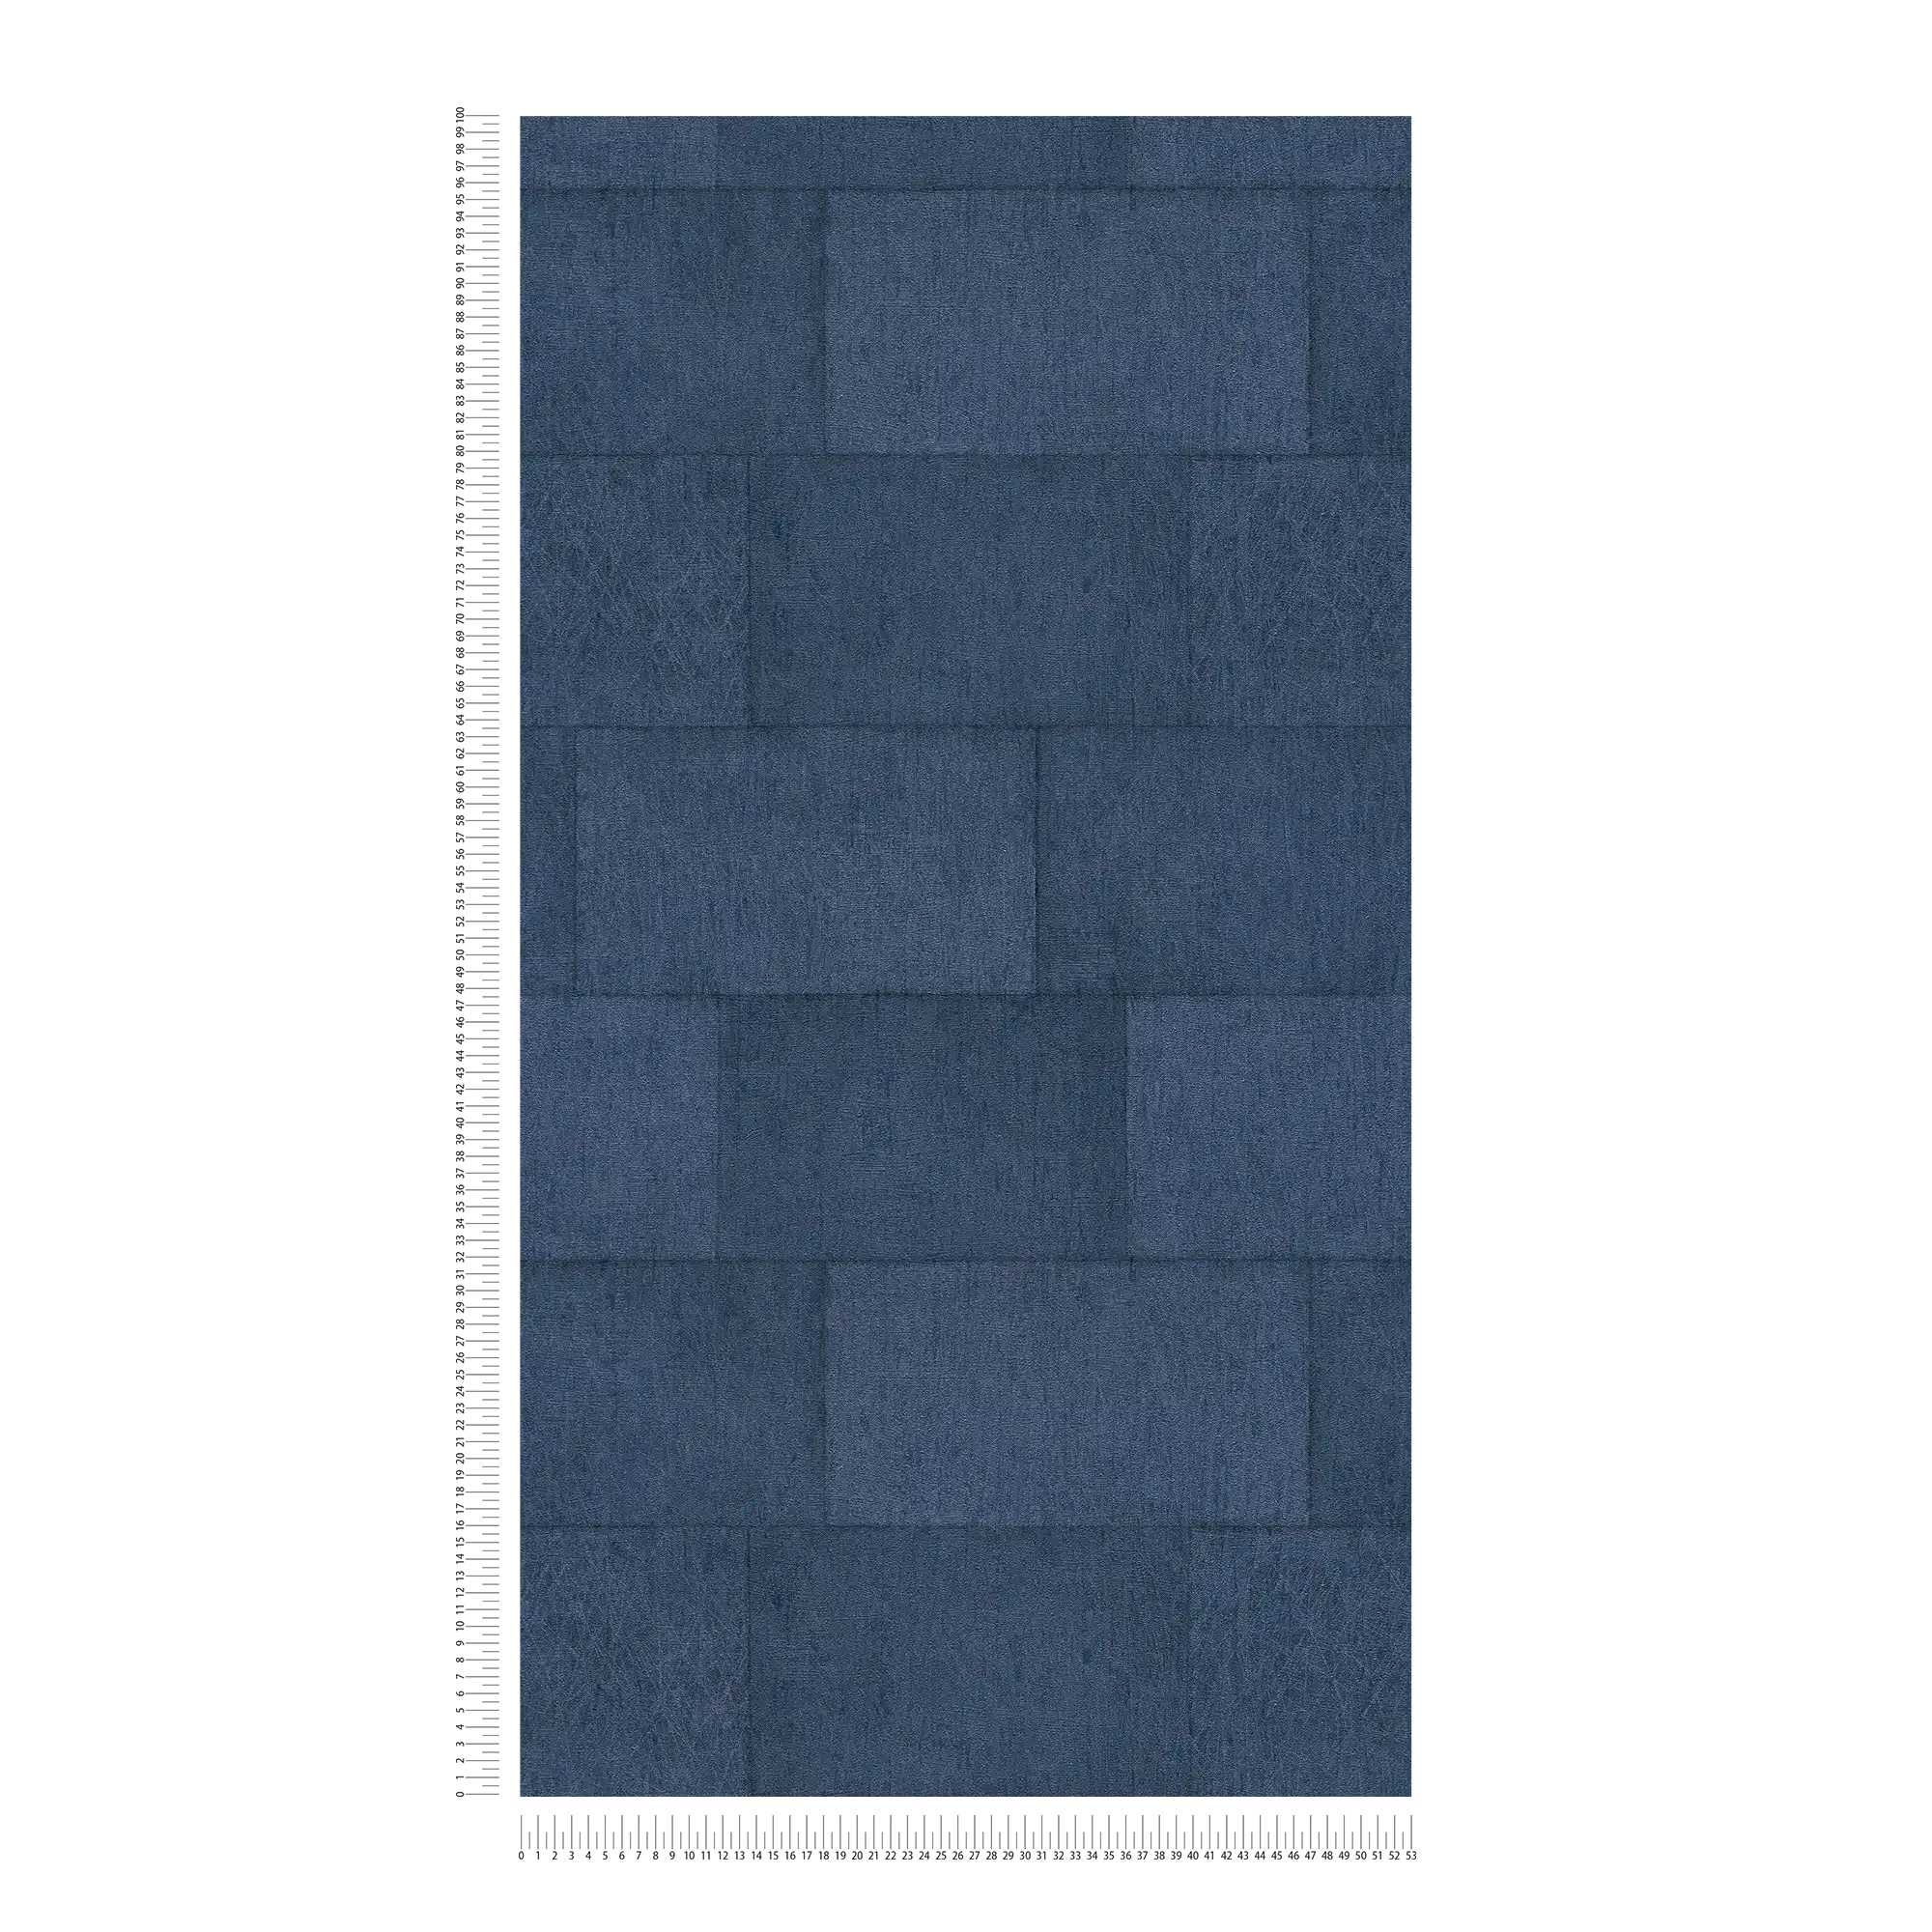             Carta da parati Stone blu scuro con effetto lucido - blu
        